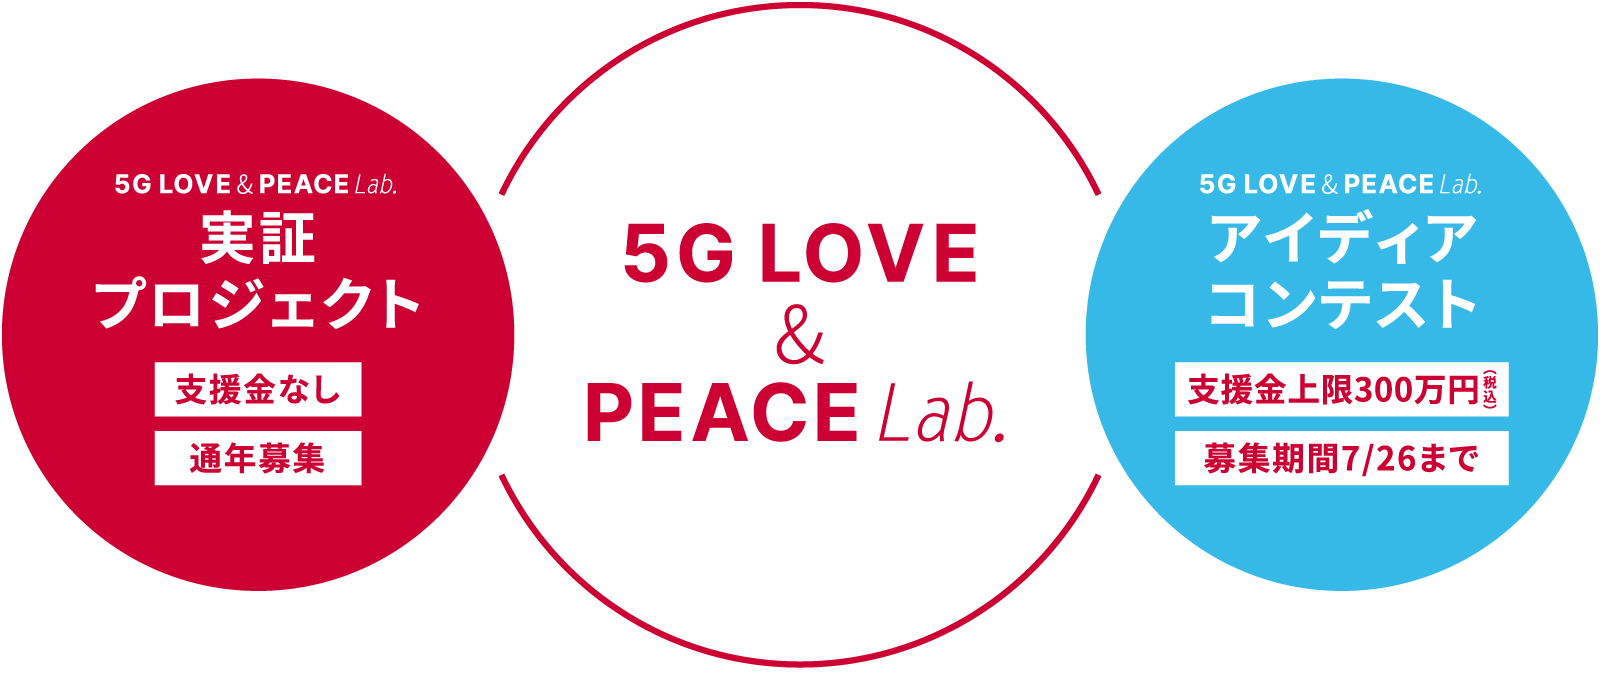 5G LOVE & PEACE Lab.について